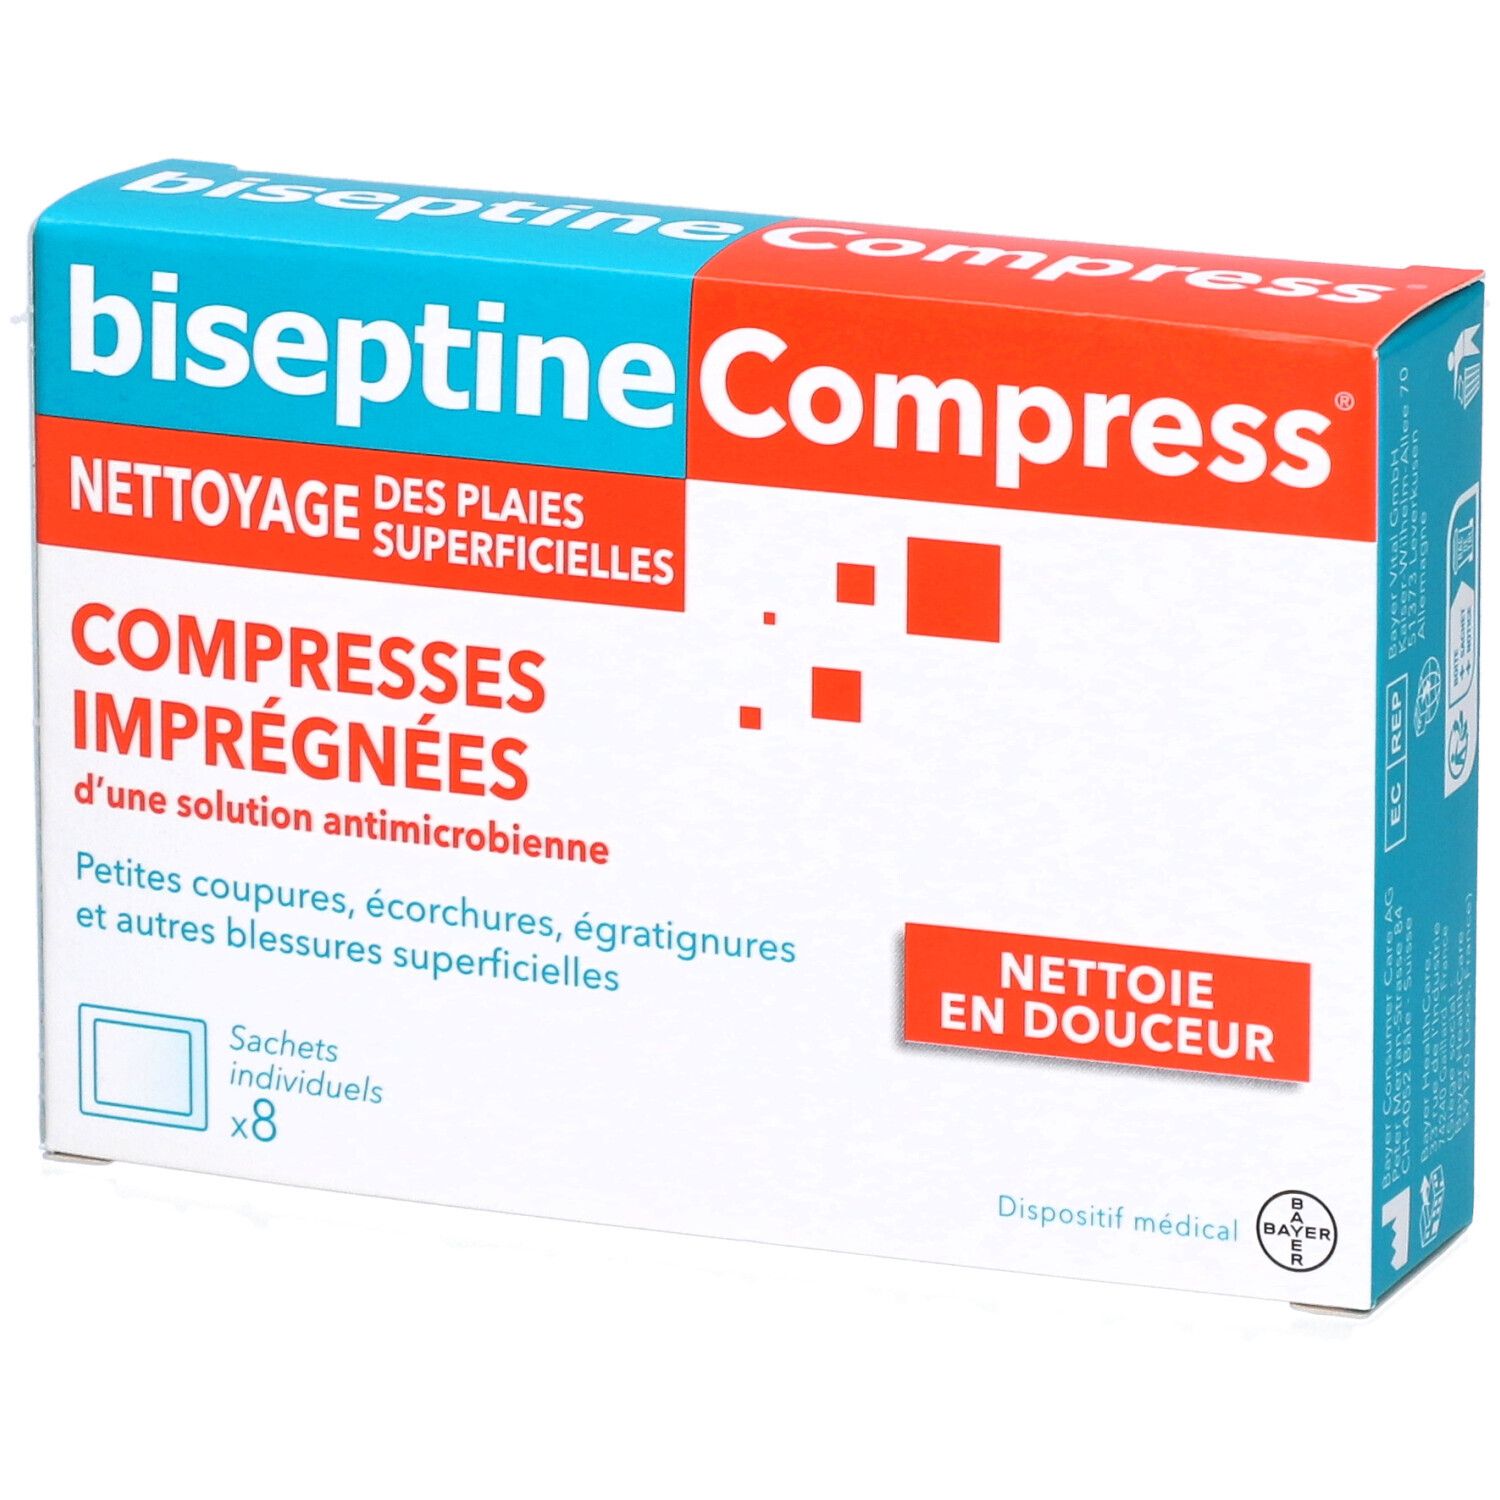 biseptineCompress® Compresses Imprégnées pour Nettoyage des Plaies Superficielles